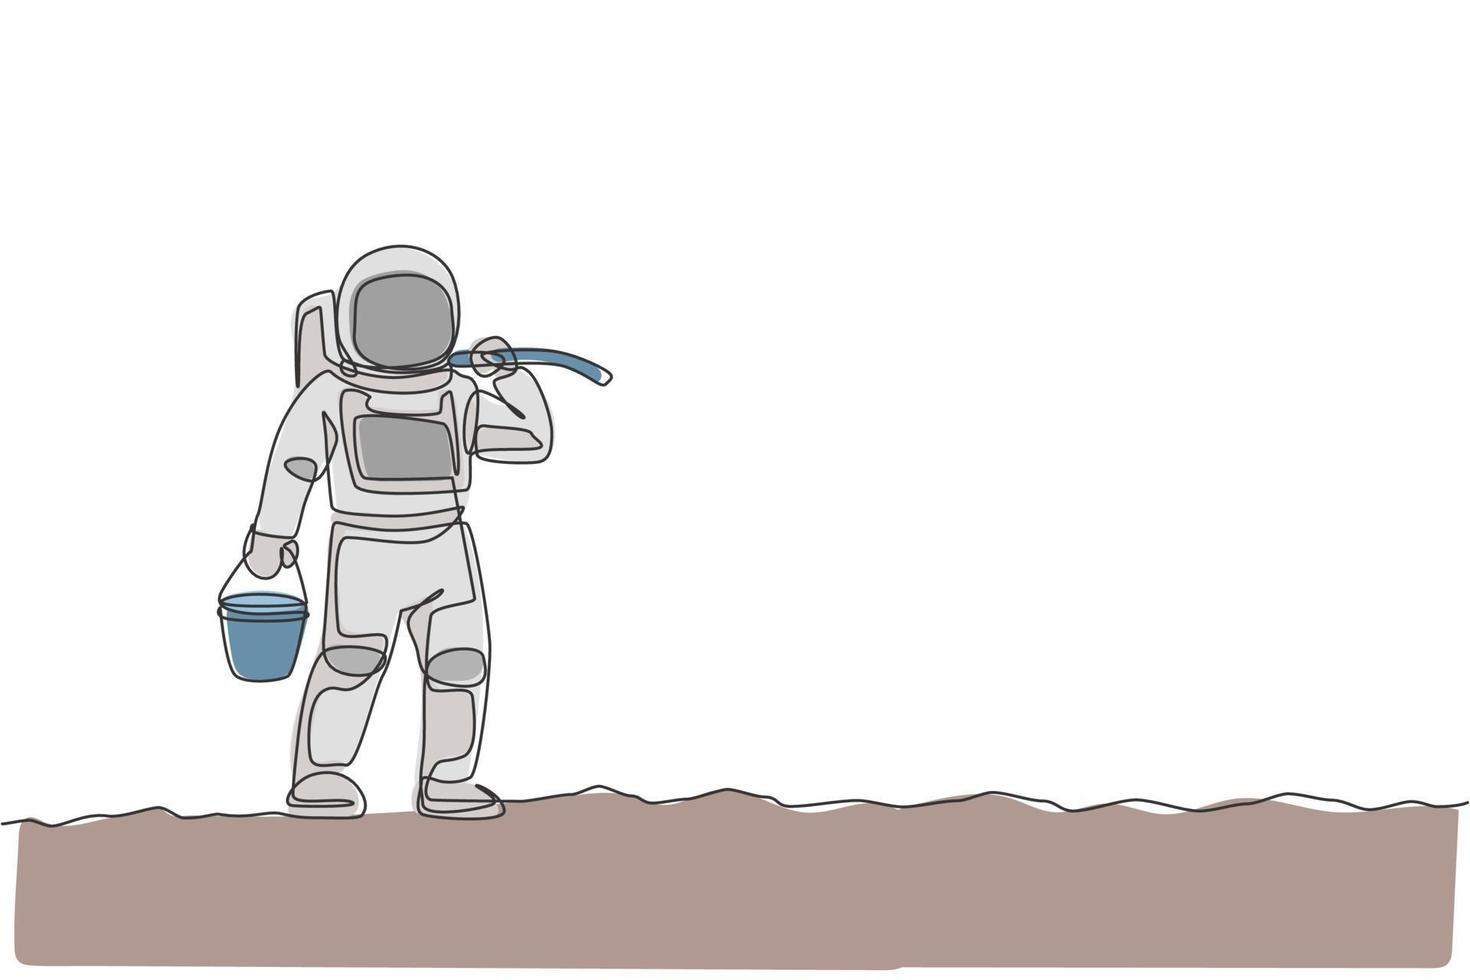 een doorlopende lijntekening van een ruimtevaarder die een emmer en een schoffel op de schouder draagt terwijl hij op het maanoppervlak loopt. deep space landbouw astronaut concept. dynamische enkele lijn tekenen ontwerp vectorillustratie vector